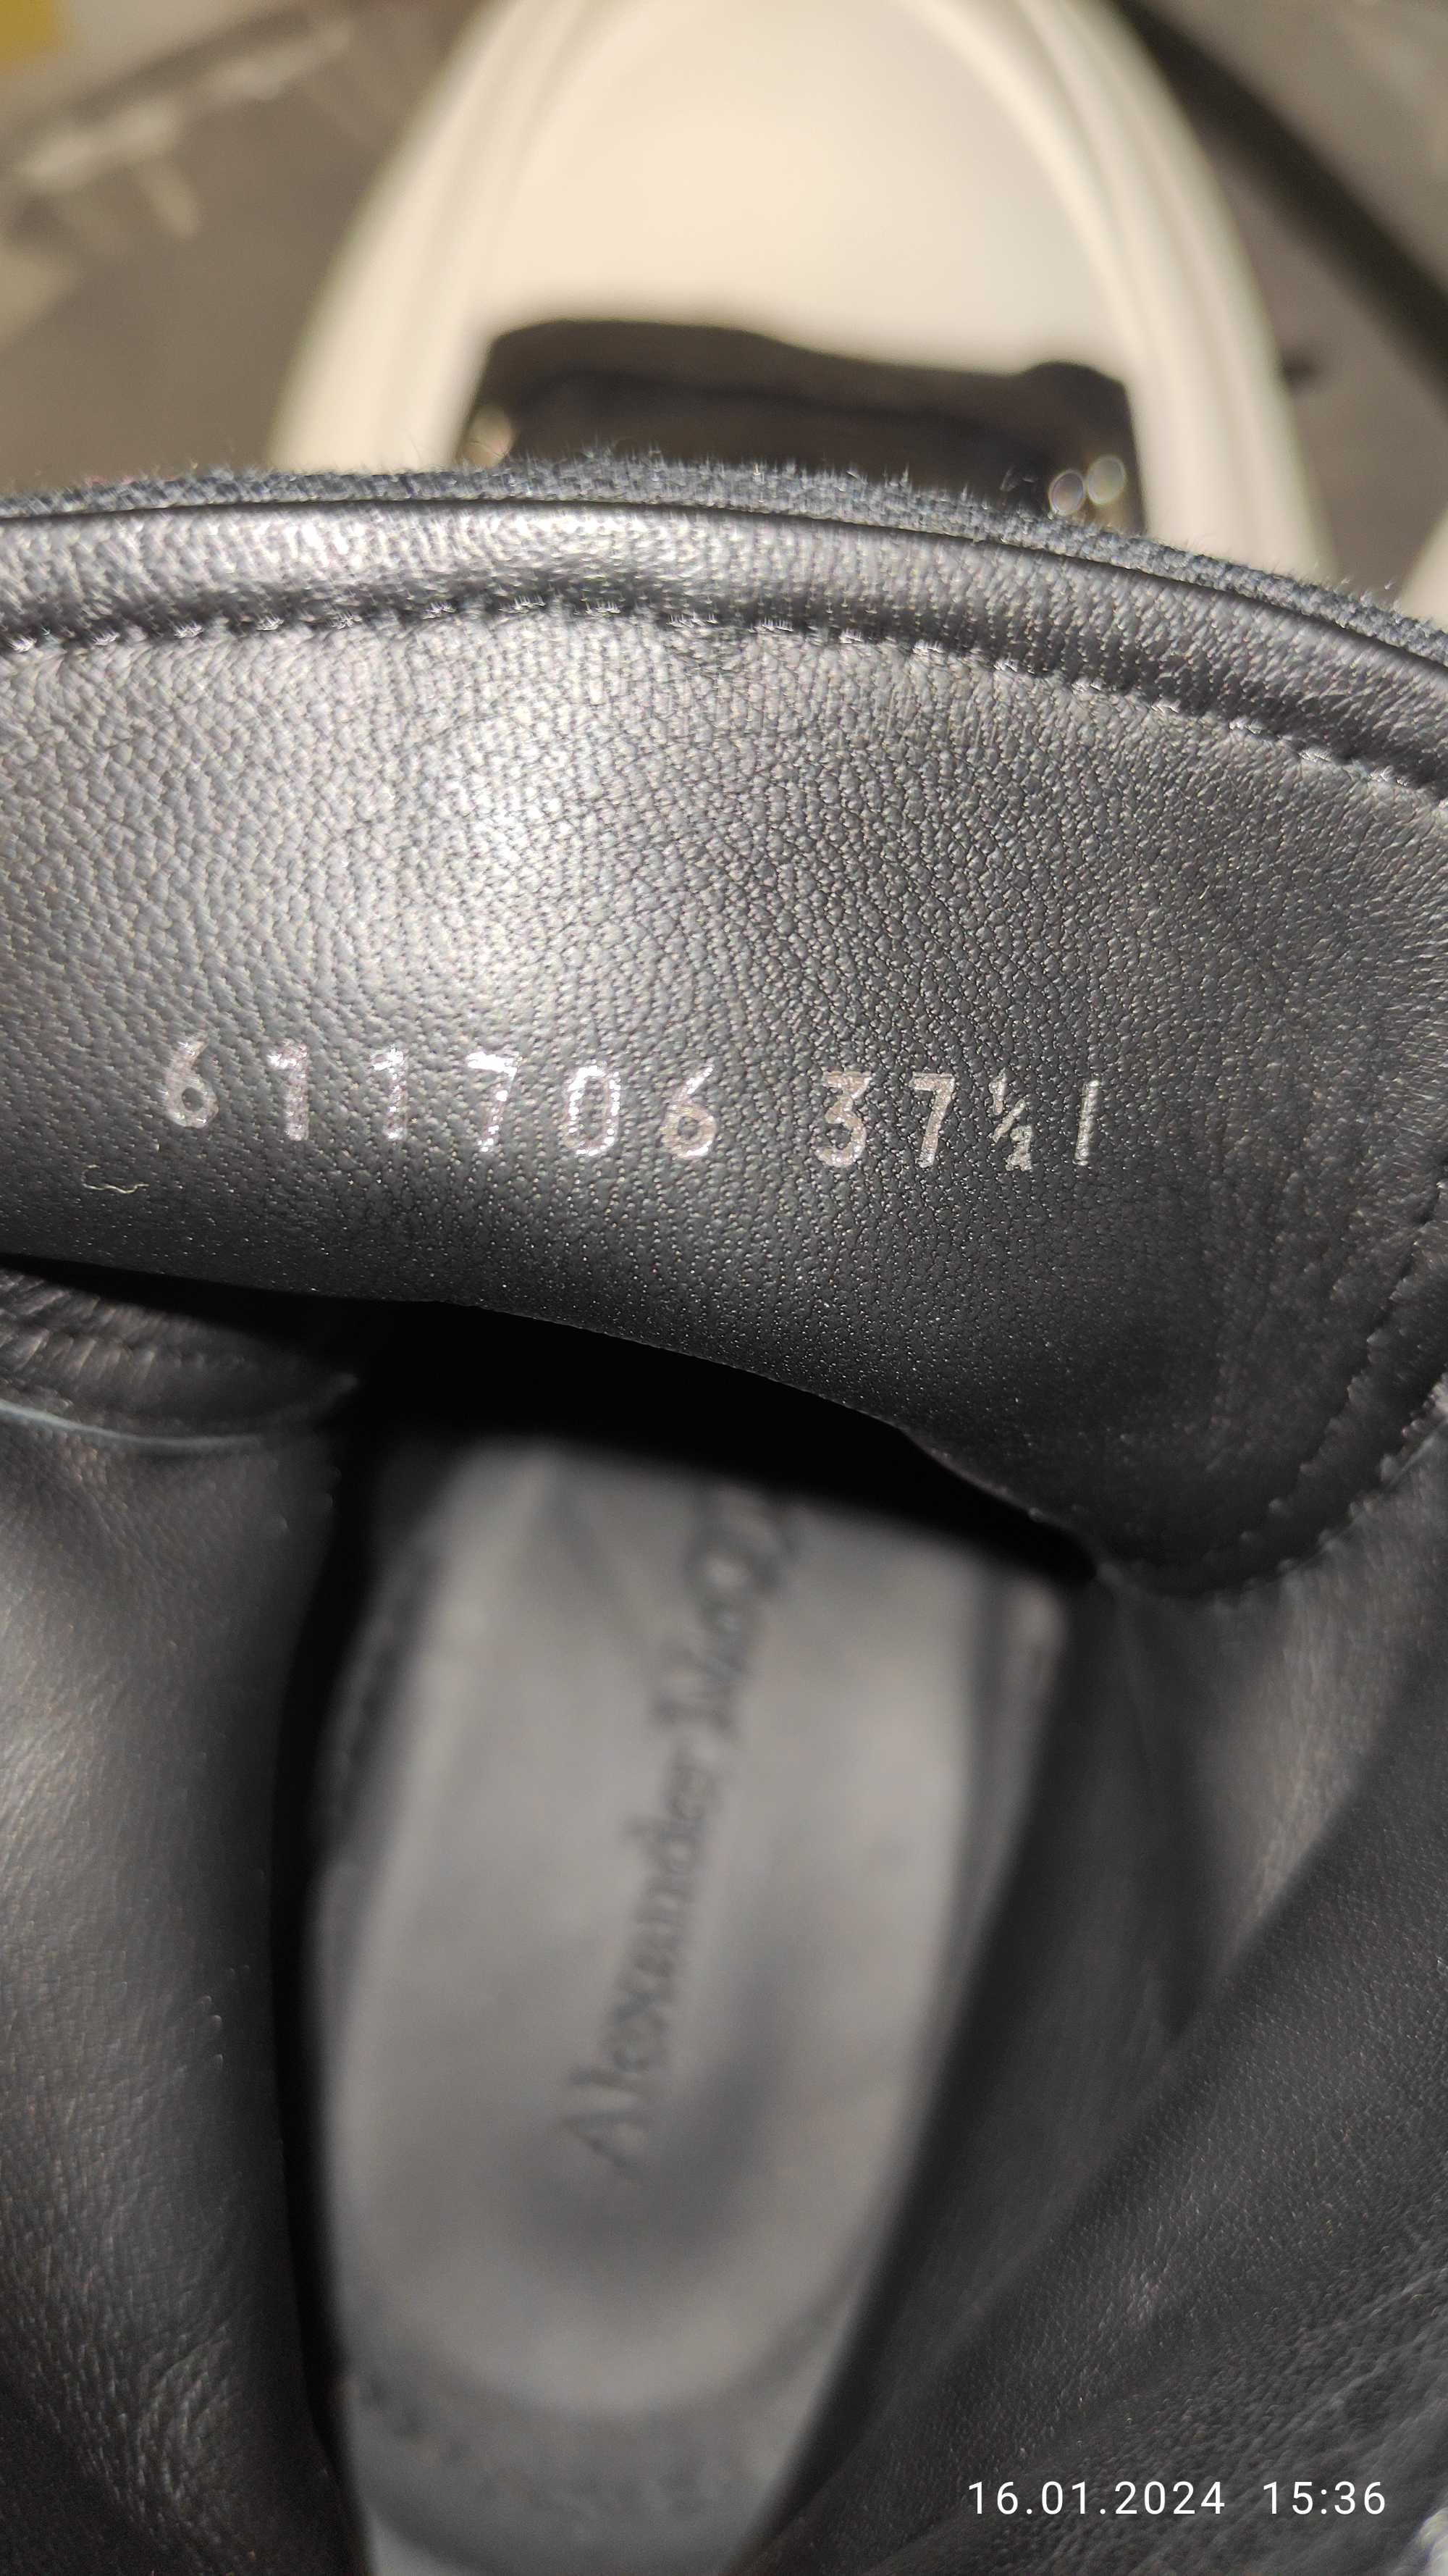 Ботинки Alexander McQueen Tread Slick, черные с белым